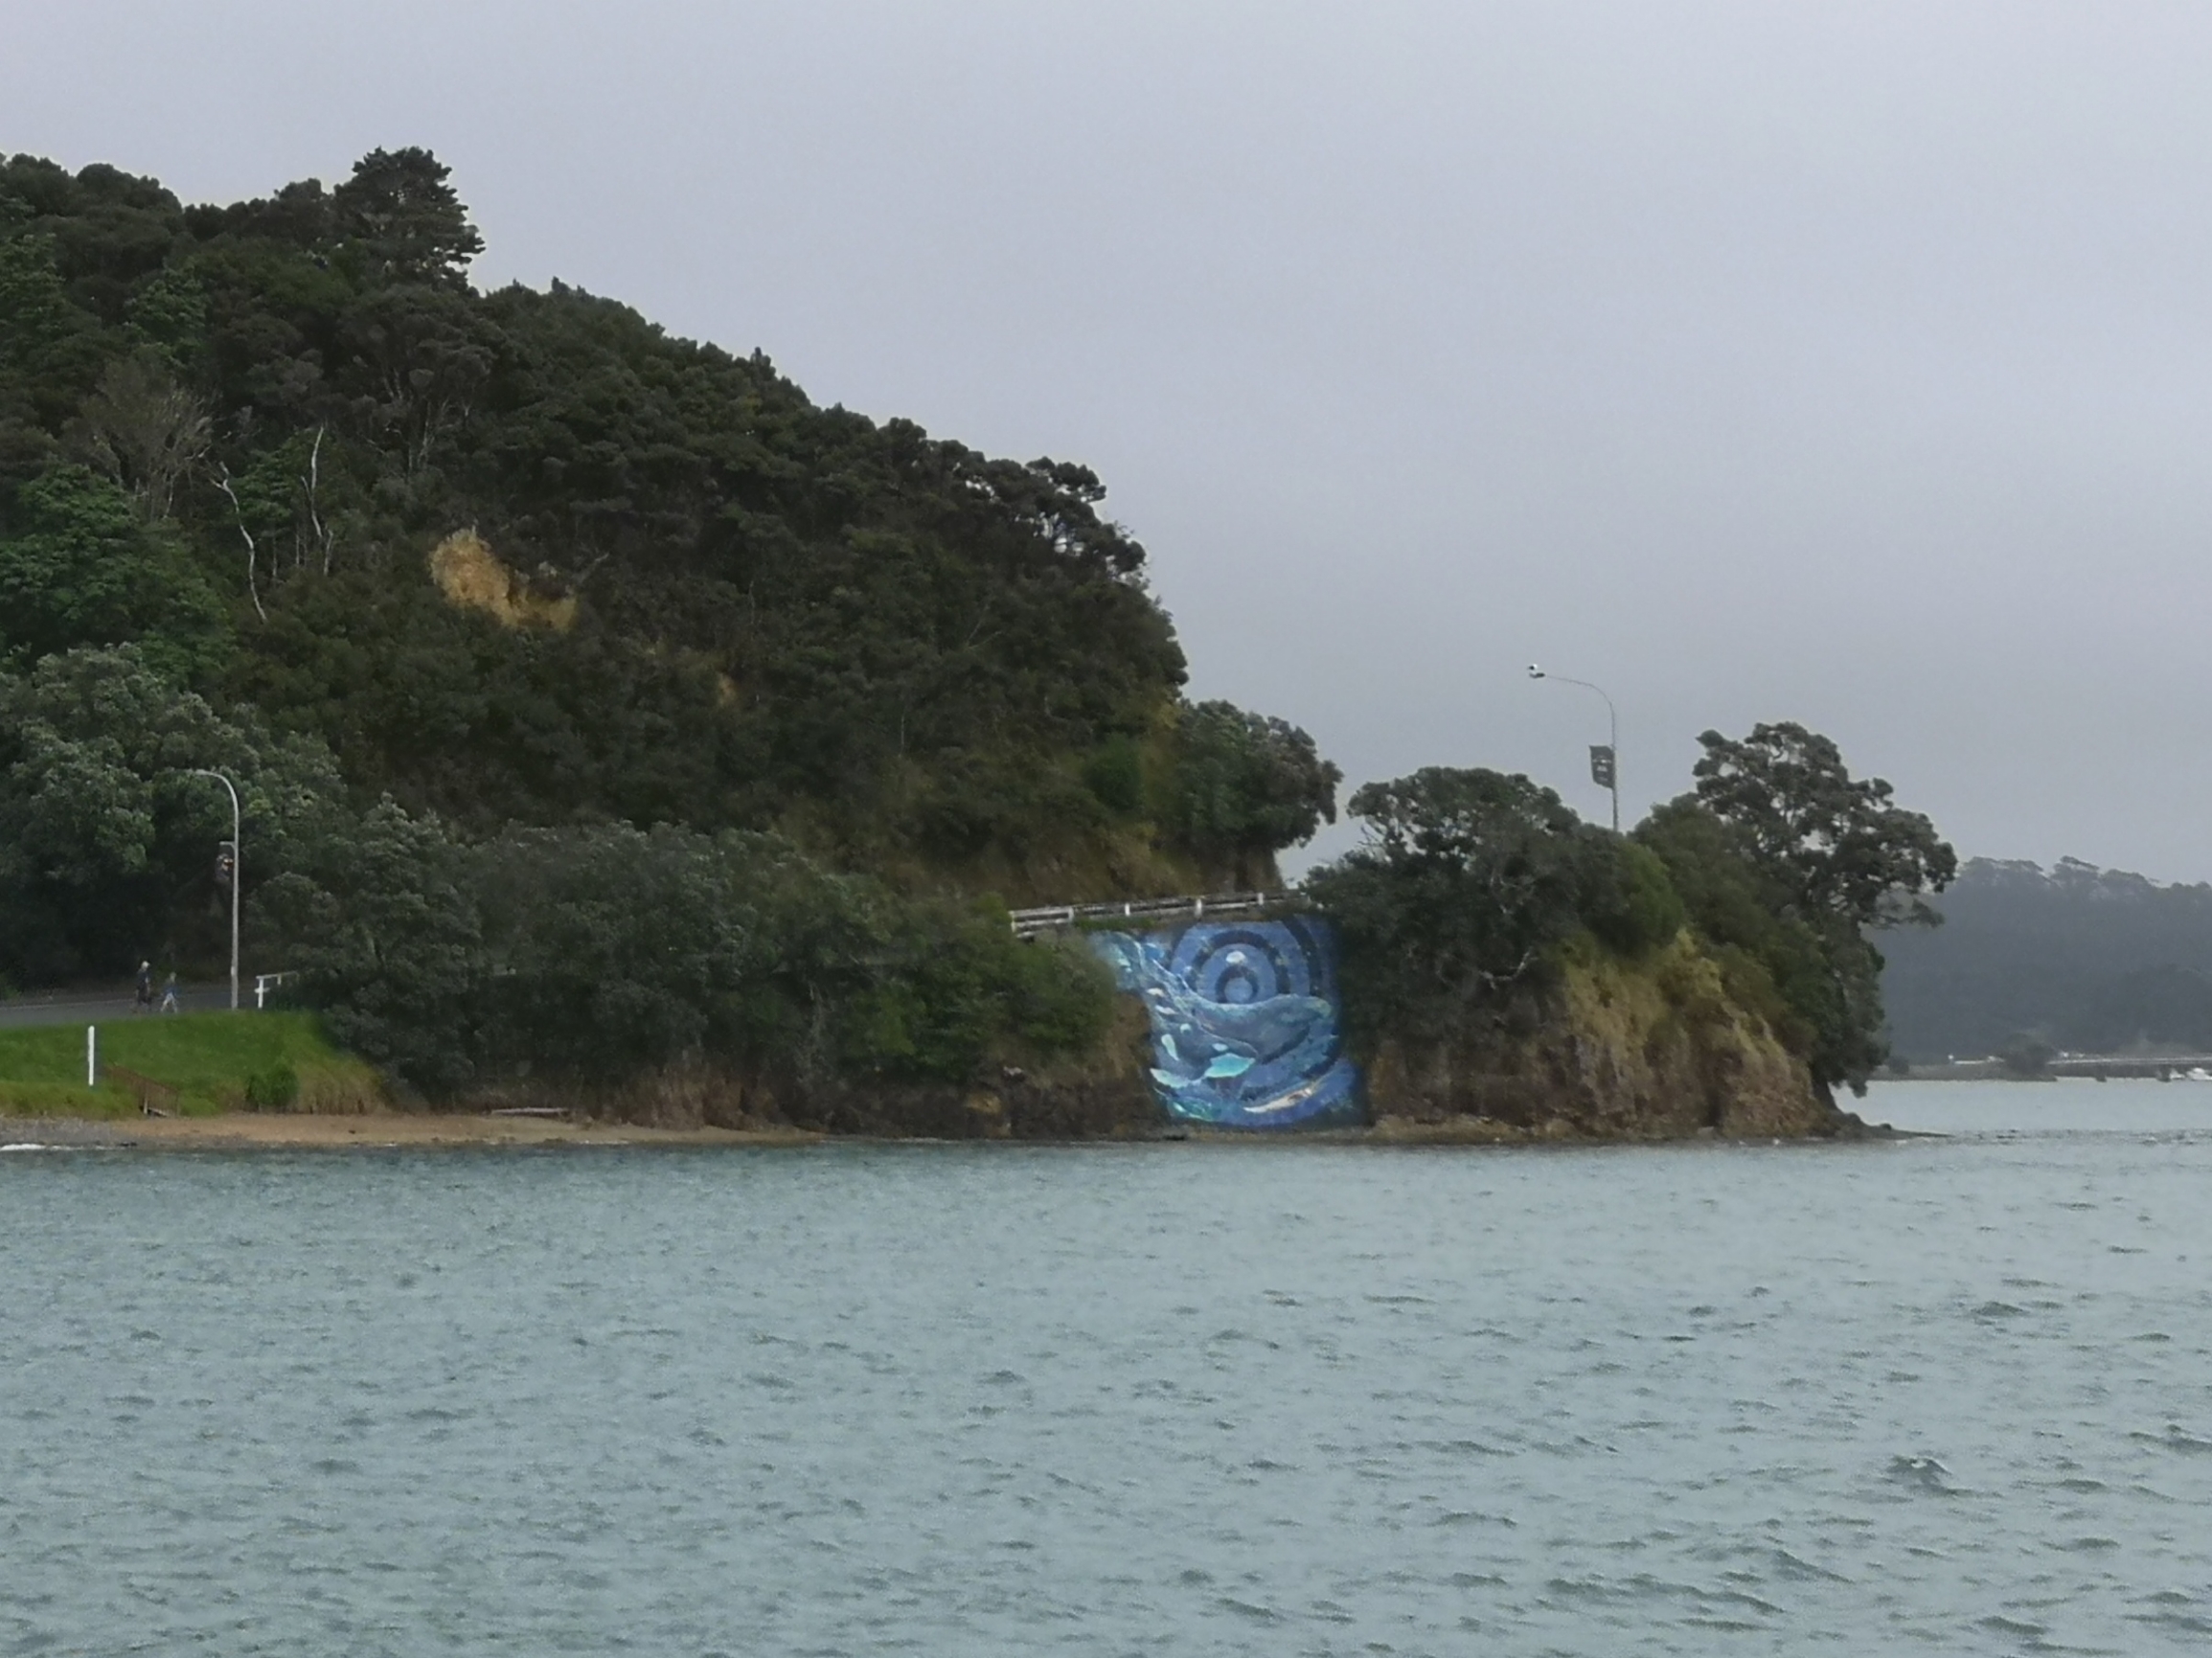 新西兰北部特苐海湾 (te tii bay) 的海堤上有一幅大型壁画，描述了深海里的海洋动物。这幅壁